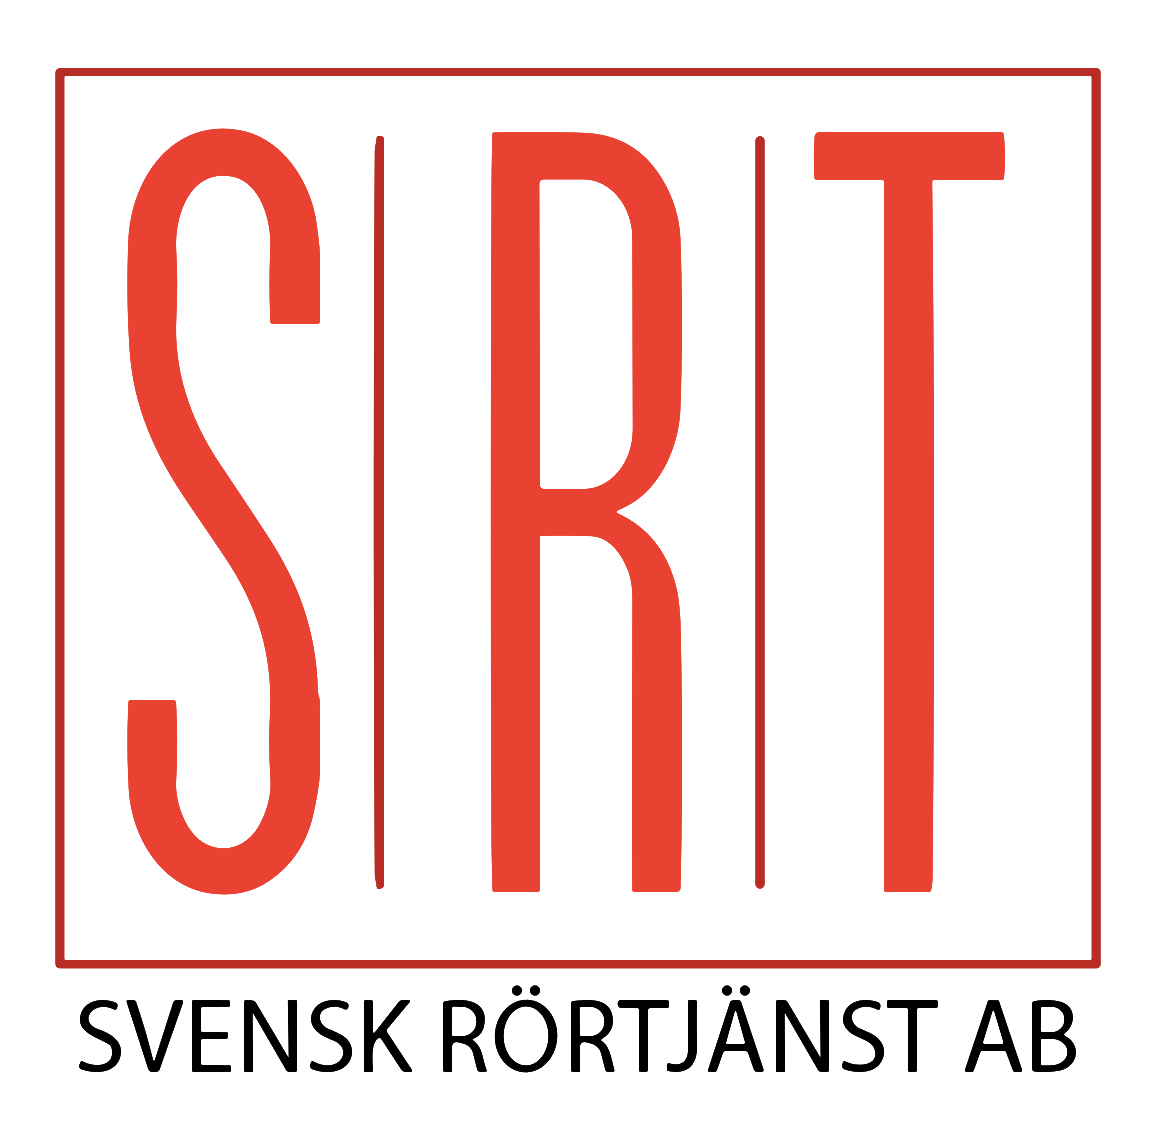 SRT Svensk Rörtjänst AB